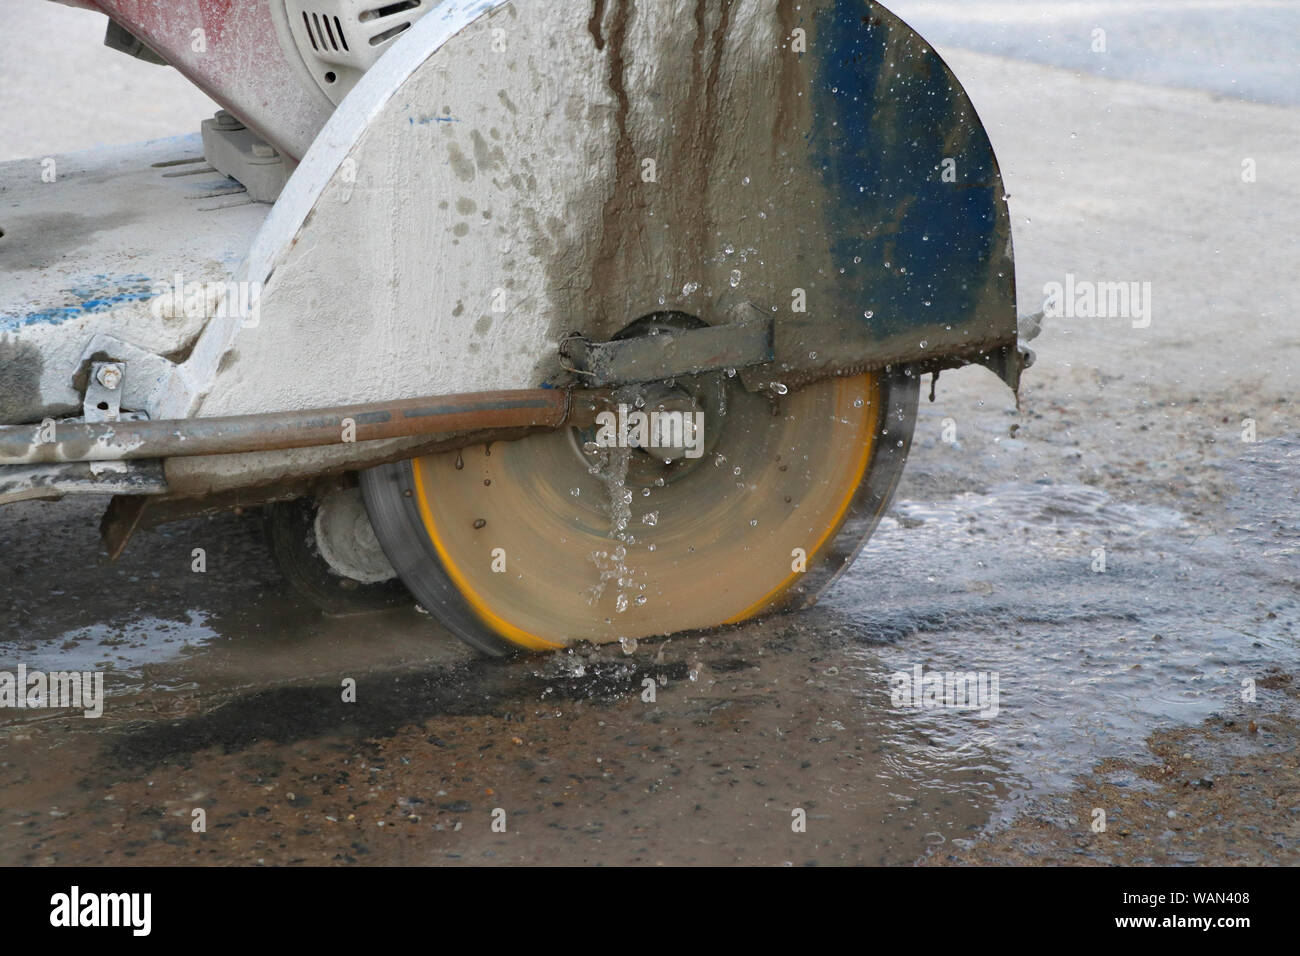 Konkrete Schneidemaschine Schneiden Beton Boden mit Wasser aus Gusseisen Staub zu verringern. Stockfoto